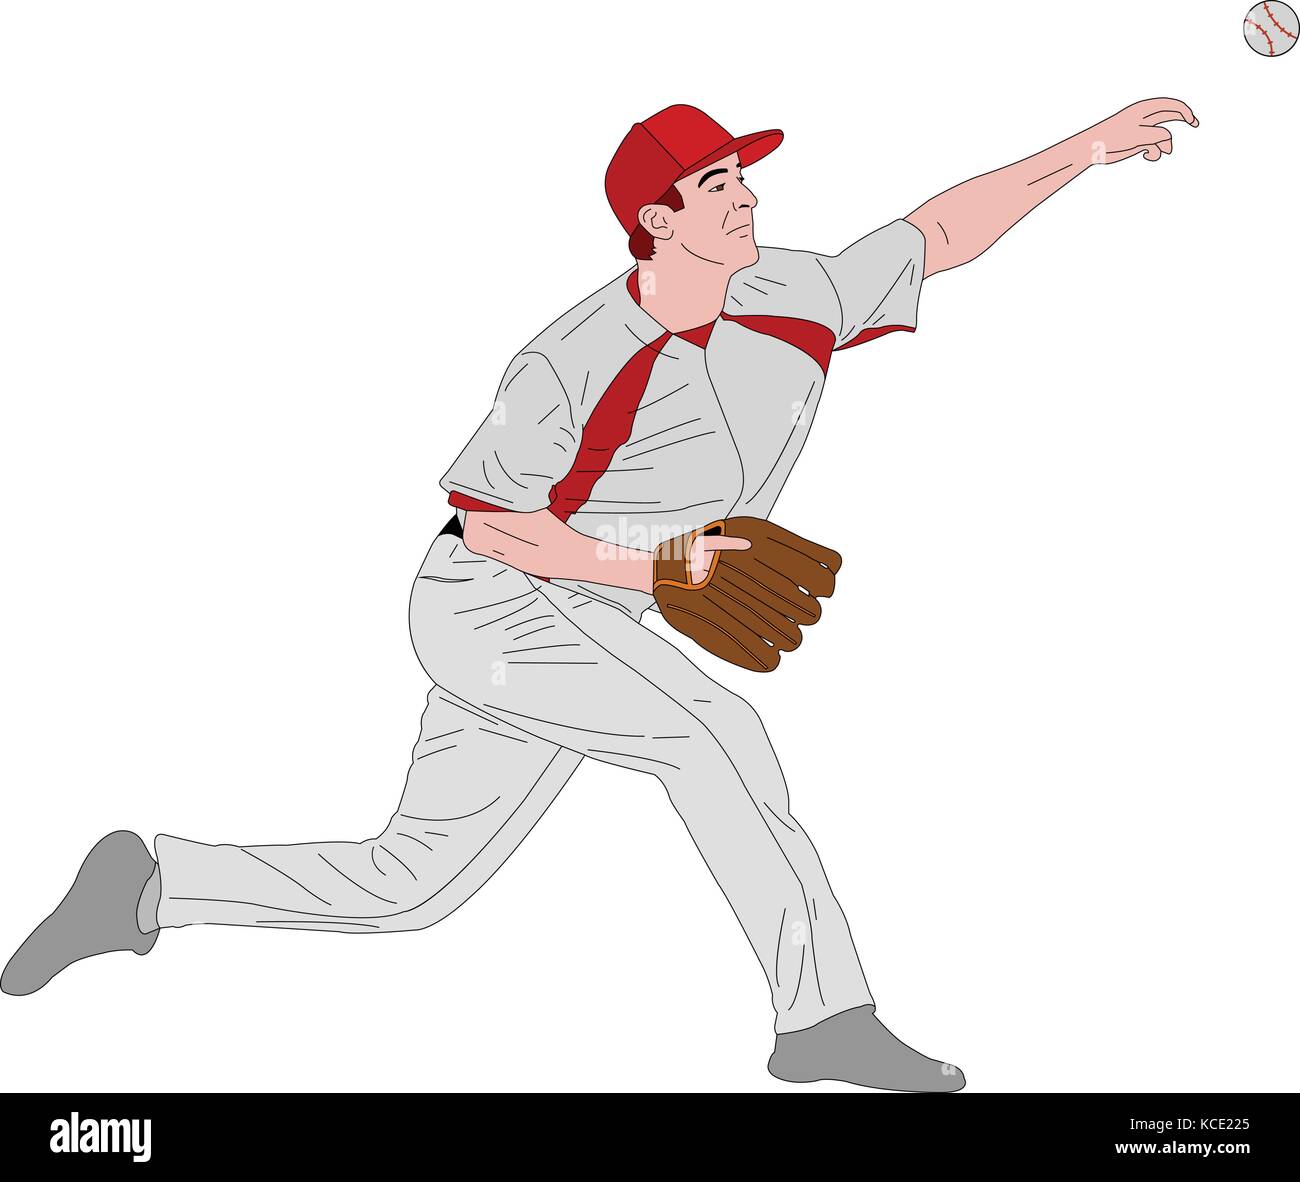 Lanzador de béisbol, ilustración detallada - vector Ilustración del Vector